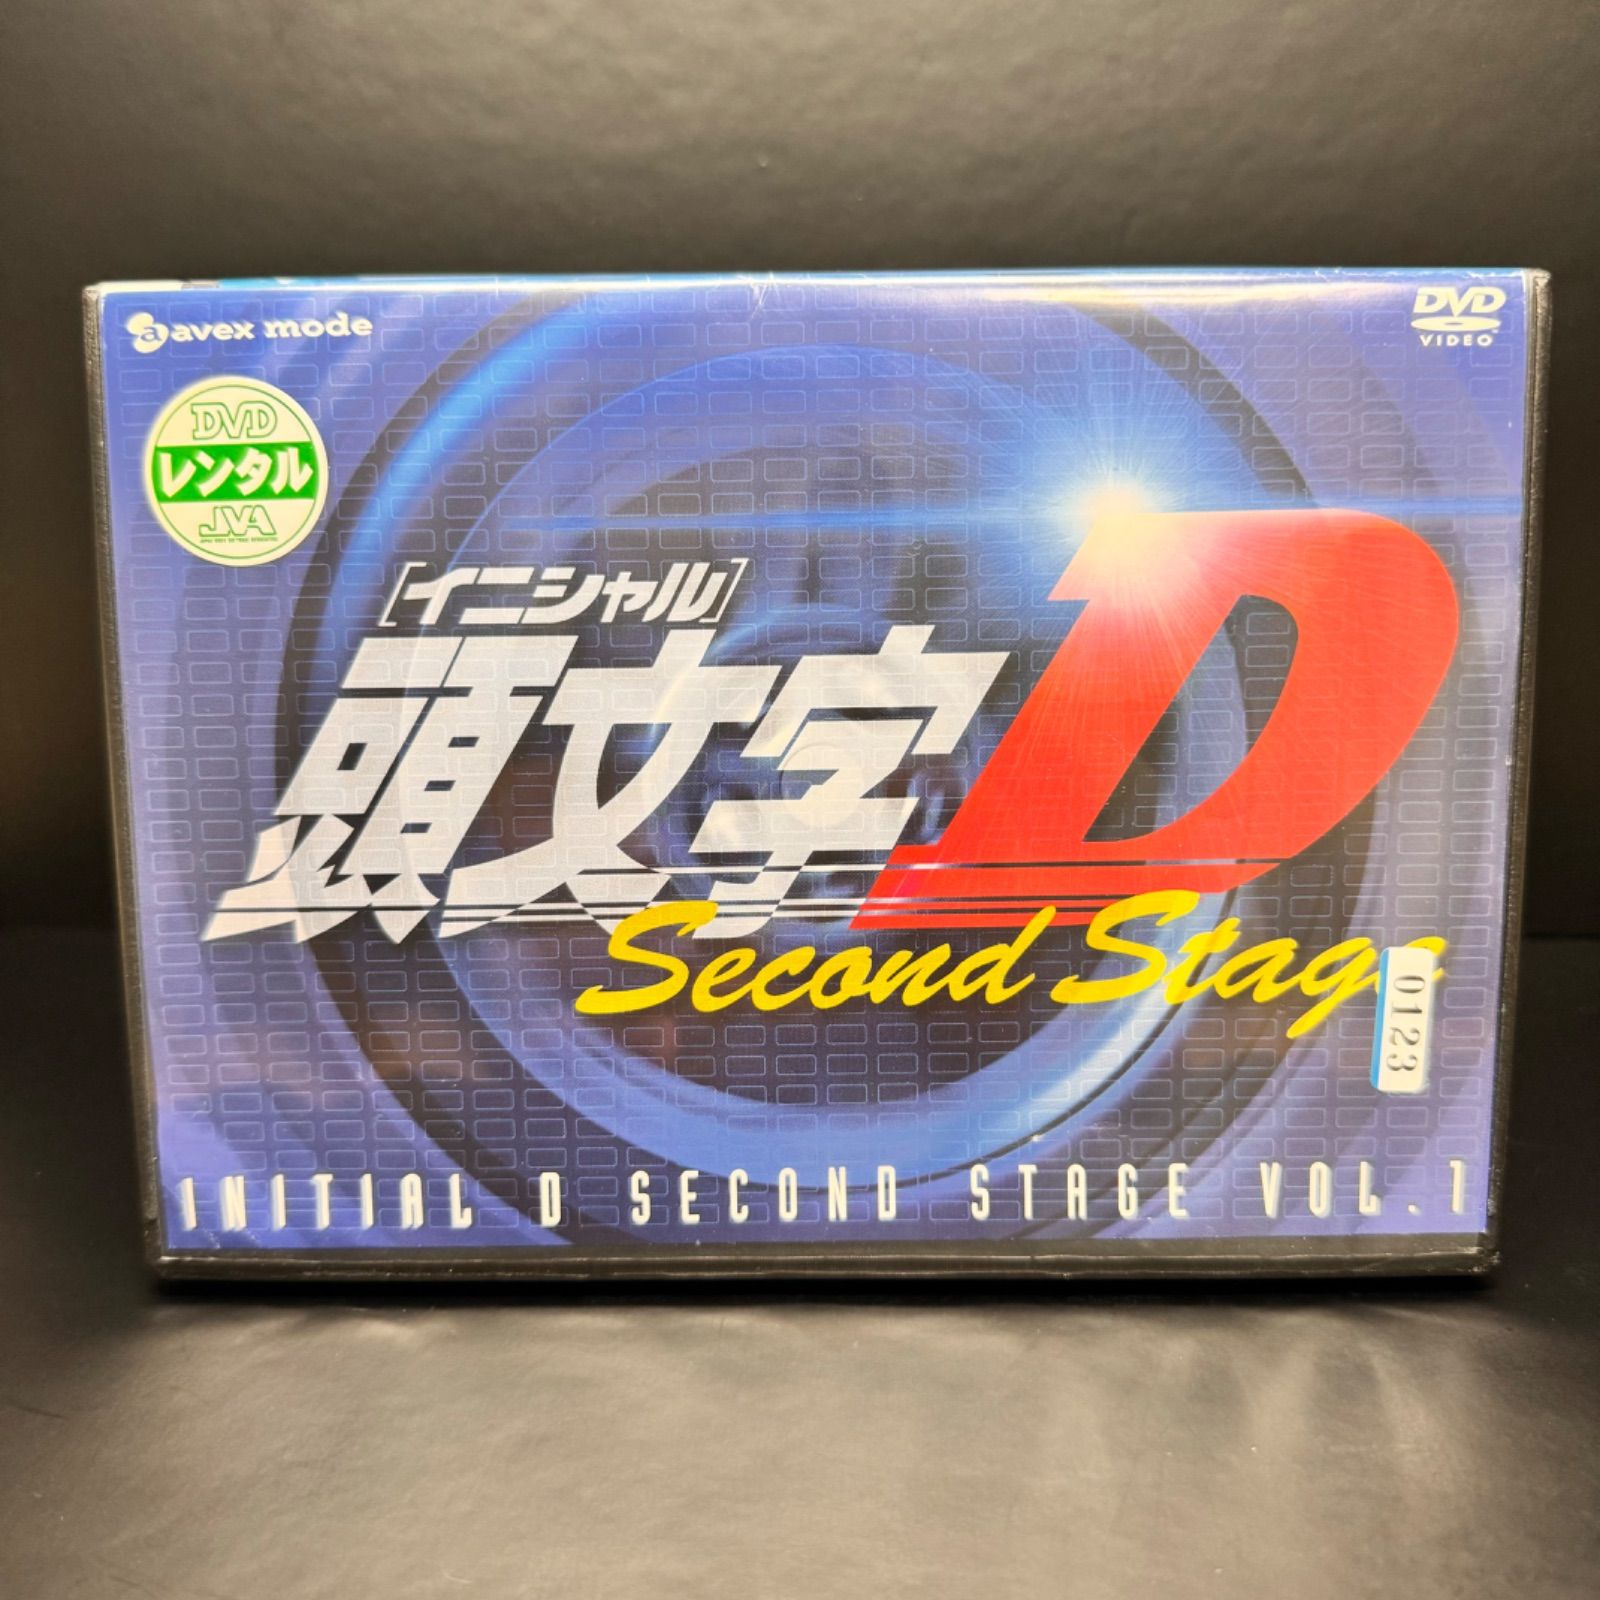 [イニシャル]頭文字D Second Stage vol.1 DVD